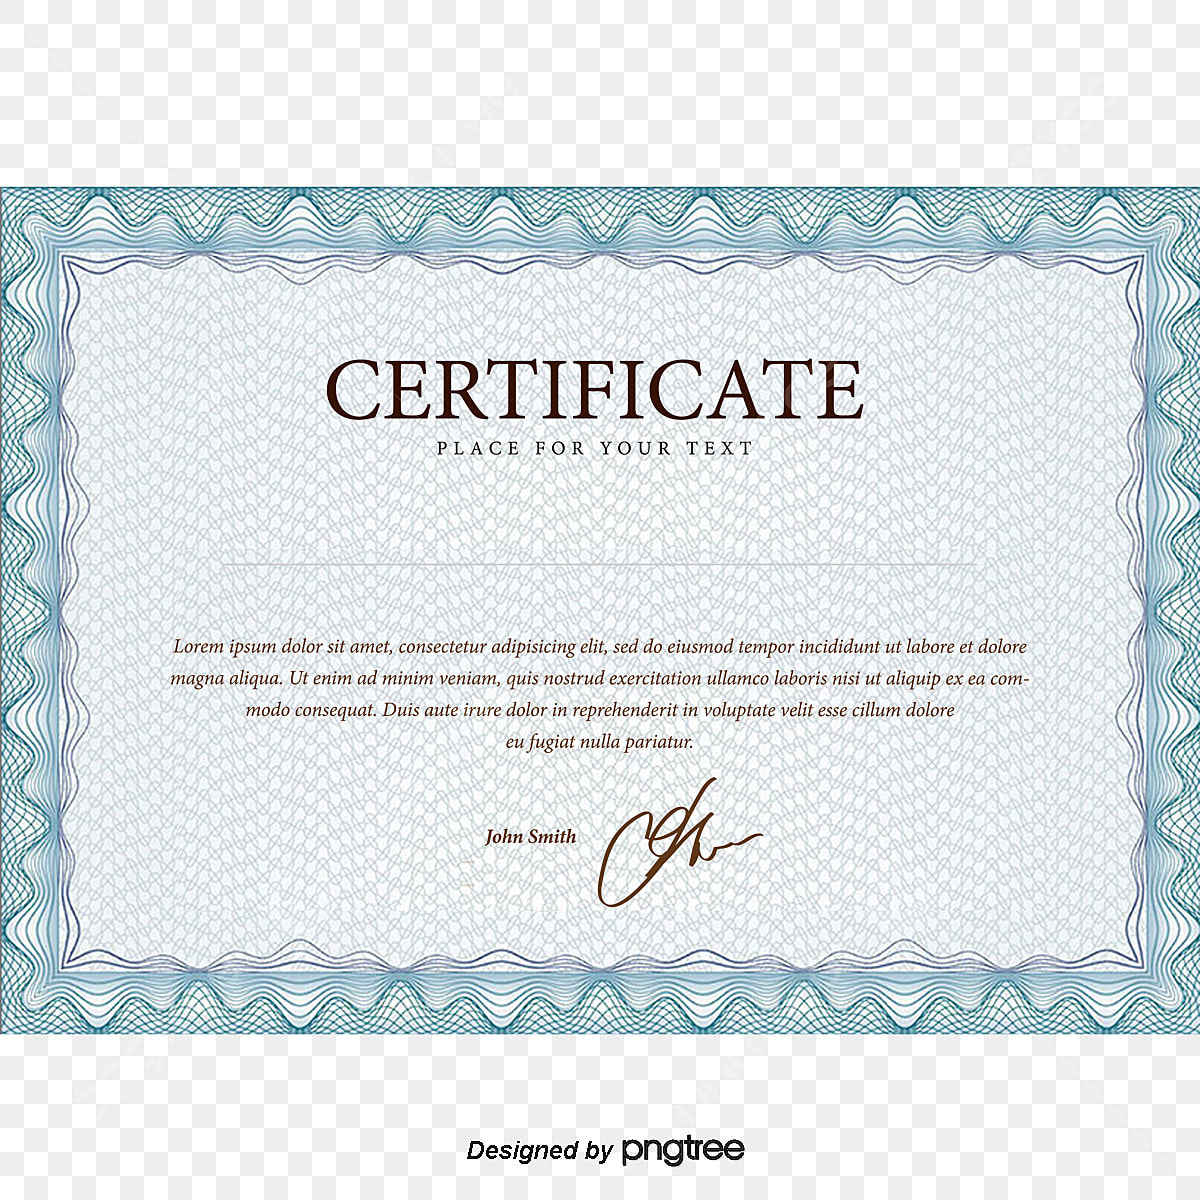 certificatu di diploma universitariu pngtree image png 2862652 - Interpretazione di i sogni